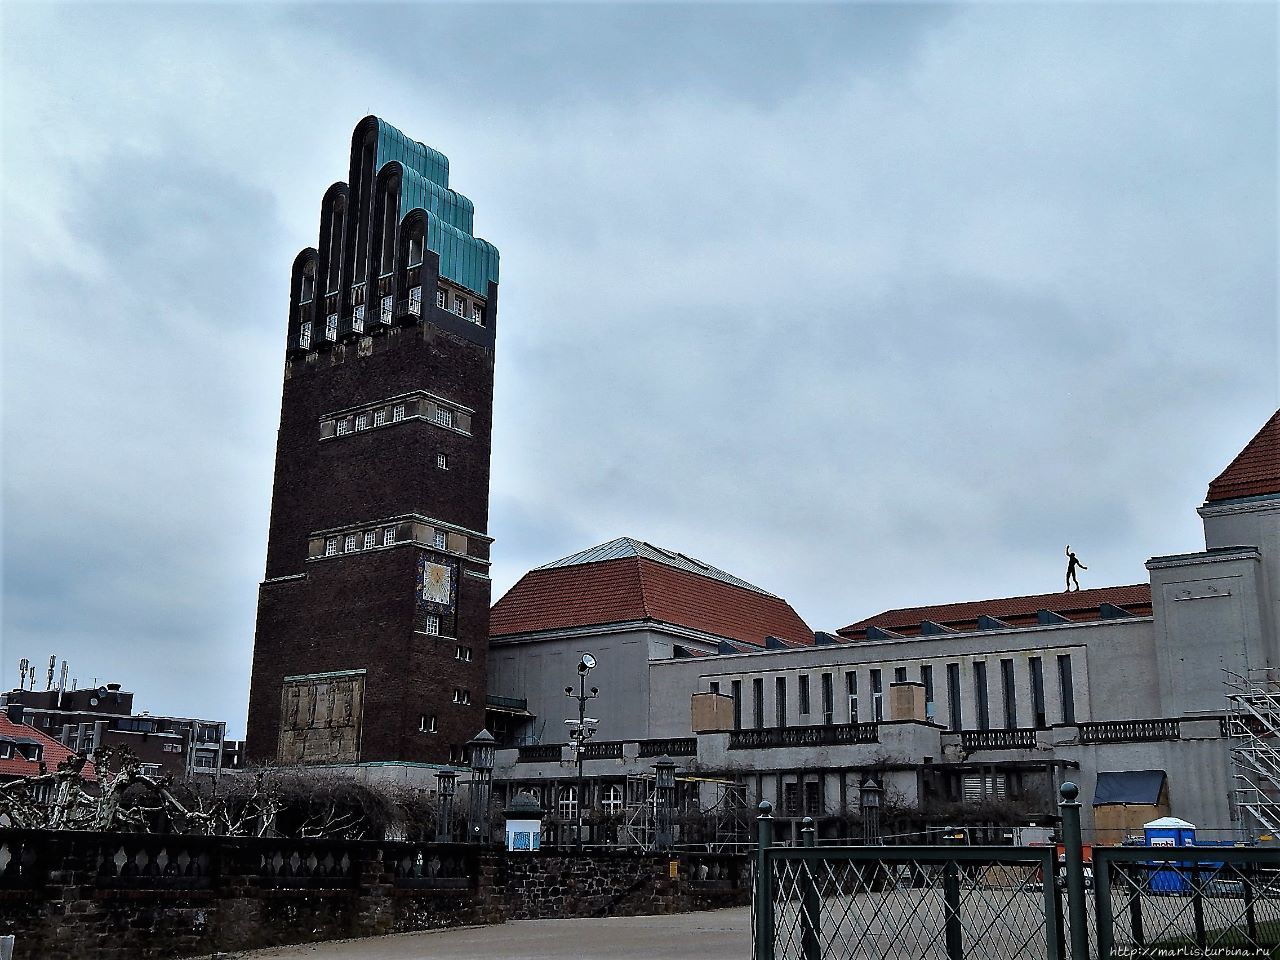 Последняя работа Ольбриха в Дармштадте — Выставочный зал и Свадебная башня (1907–1908). Крыша башни имеет форму руки, десница Божия, охраняющая Дармштадт Дармштадт, Германия